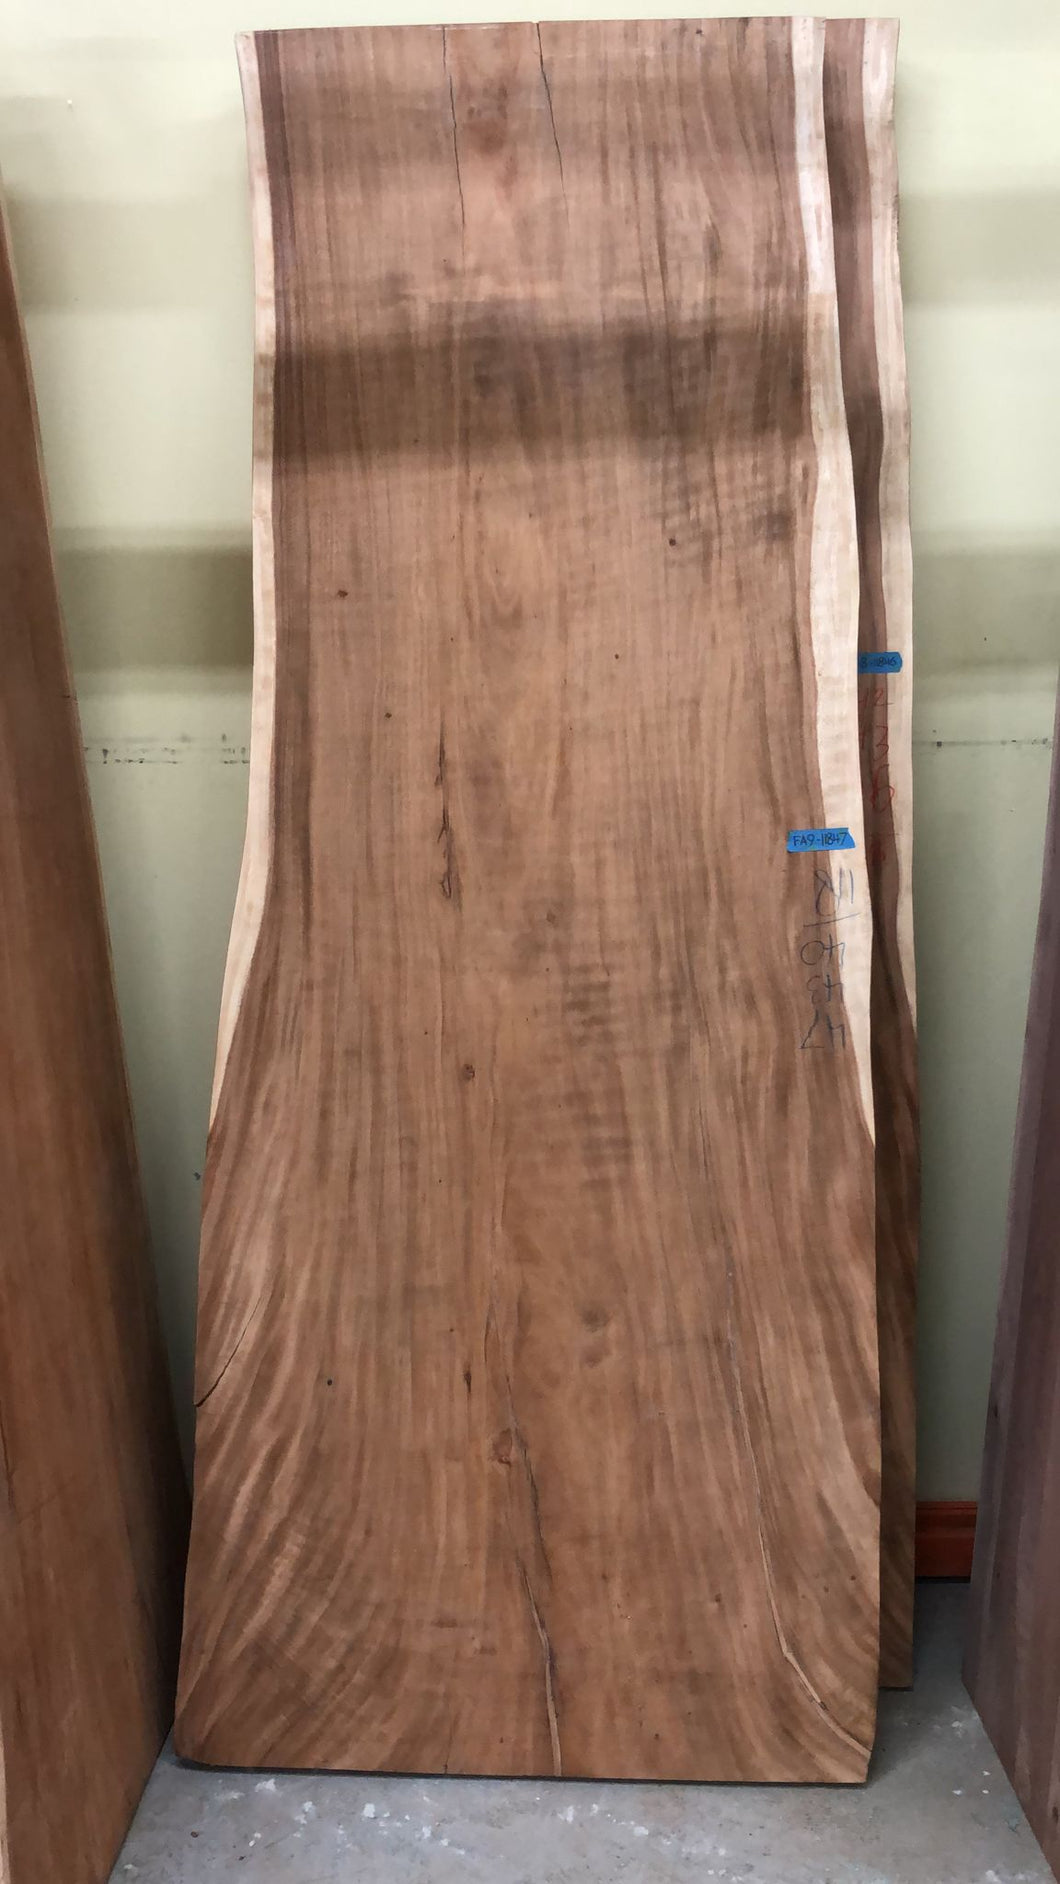 FA9-11847 Live edge acacia wood (single slab) 118